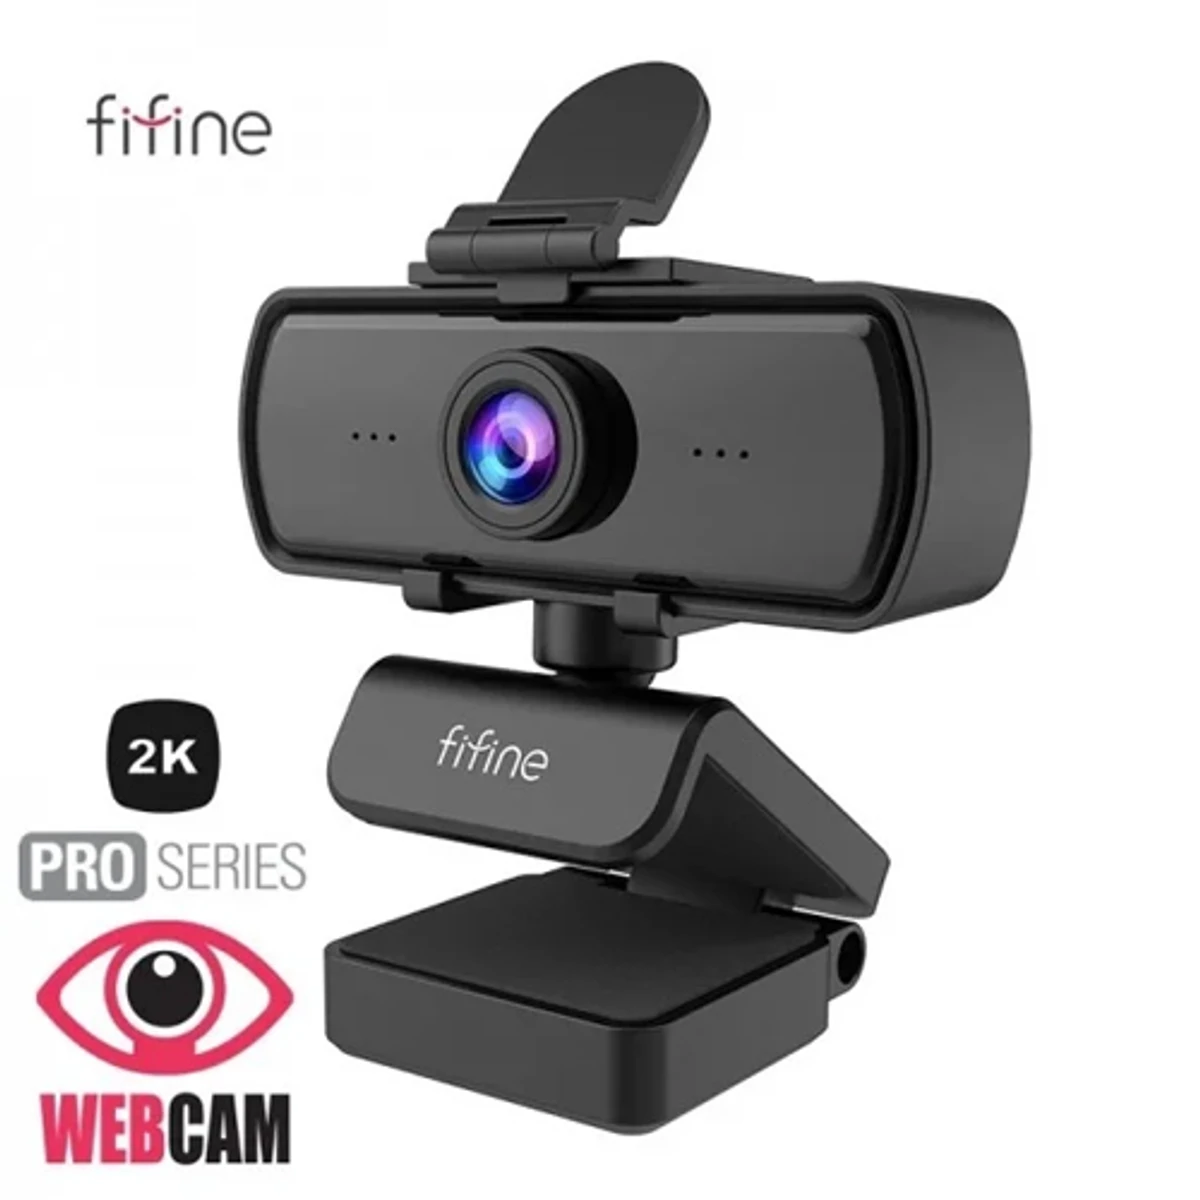 Fifine K420 Webcam (2k recording)